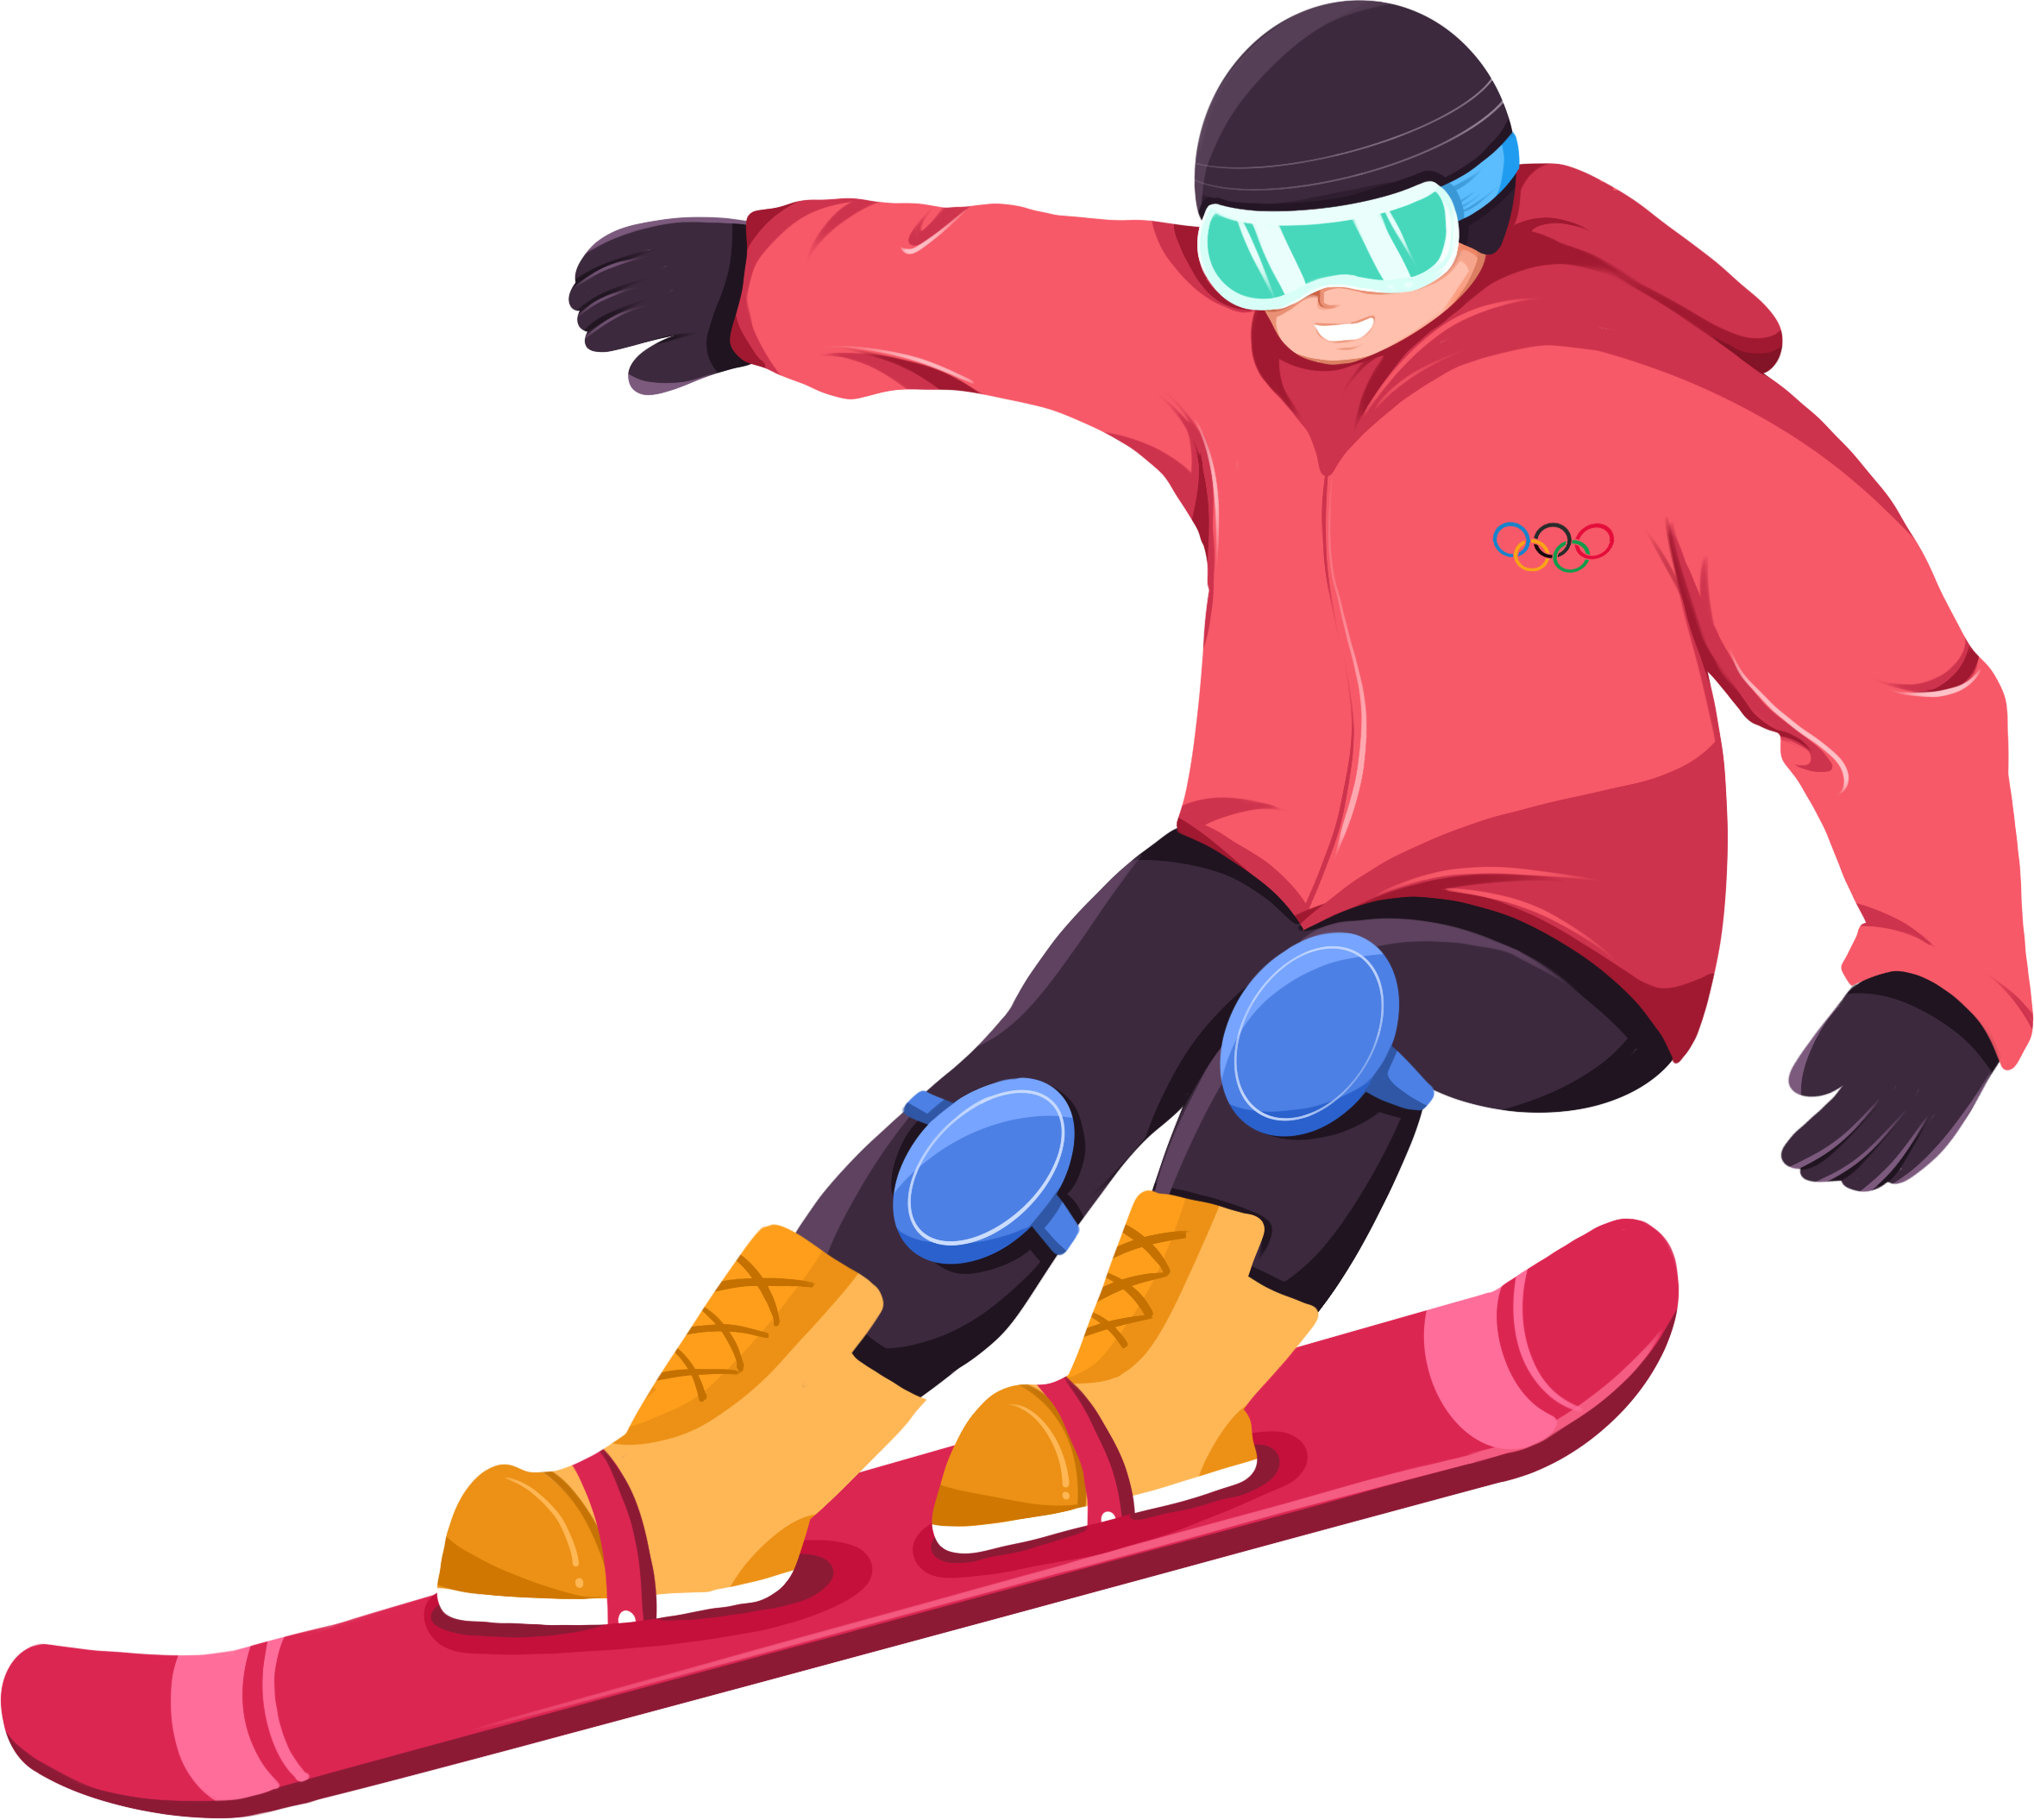 2022年北京冬奥会单板滑雪运动员手绘矢量图